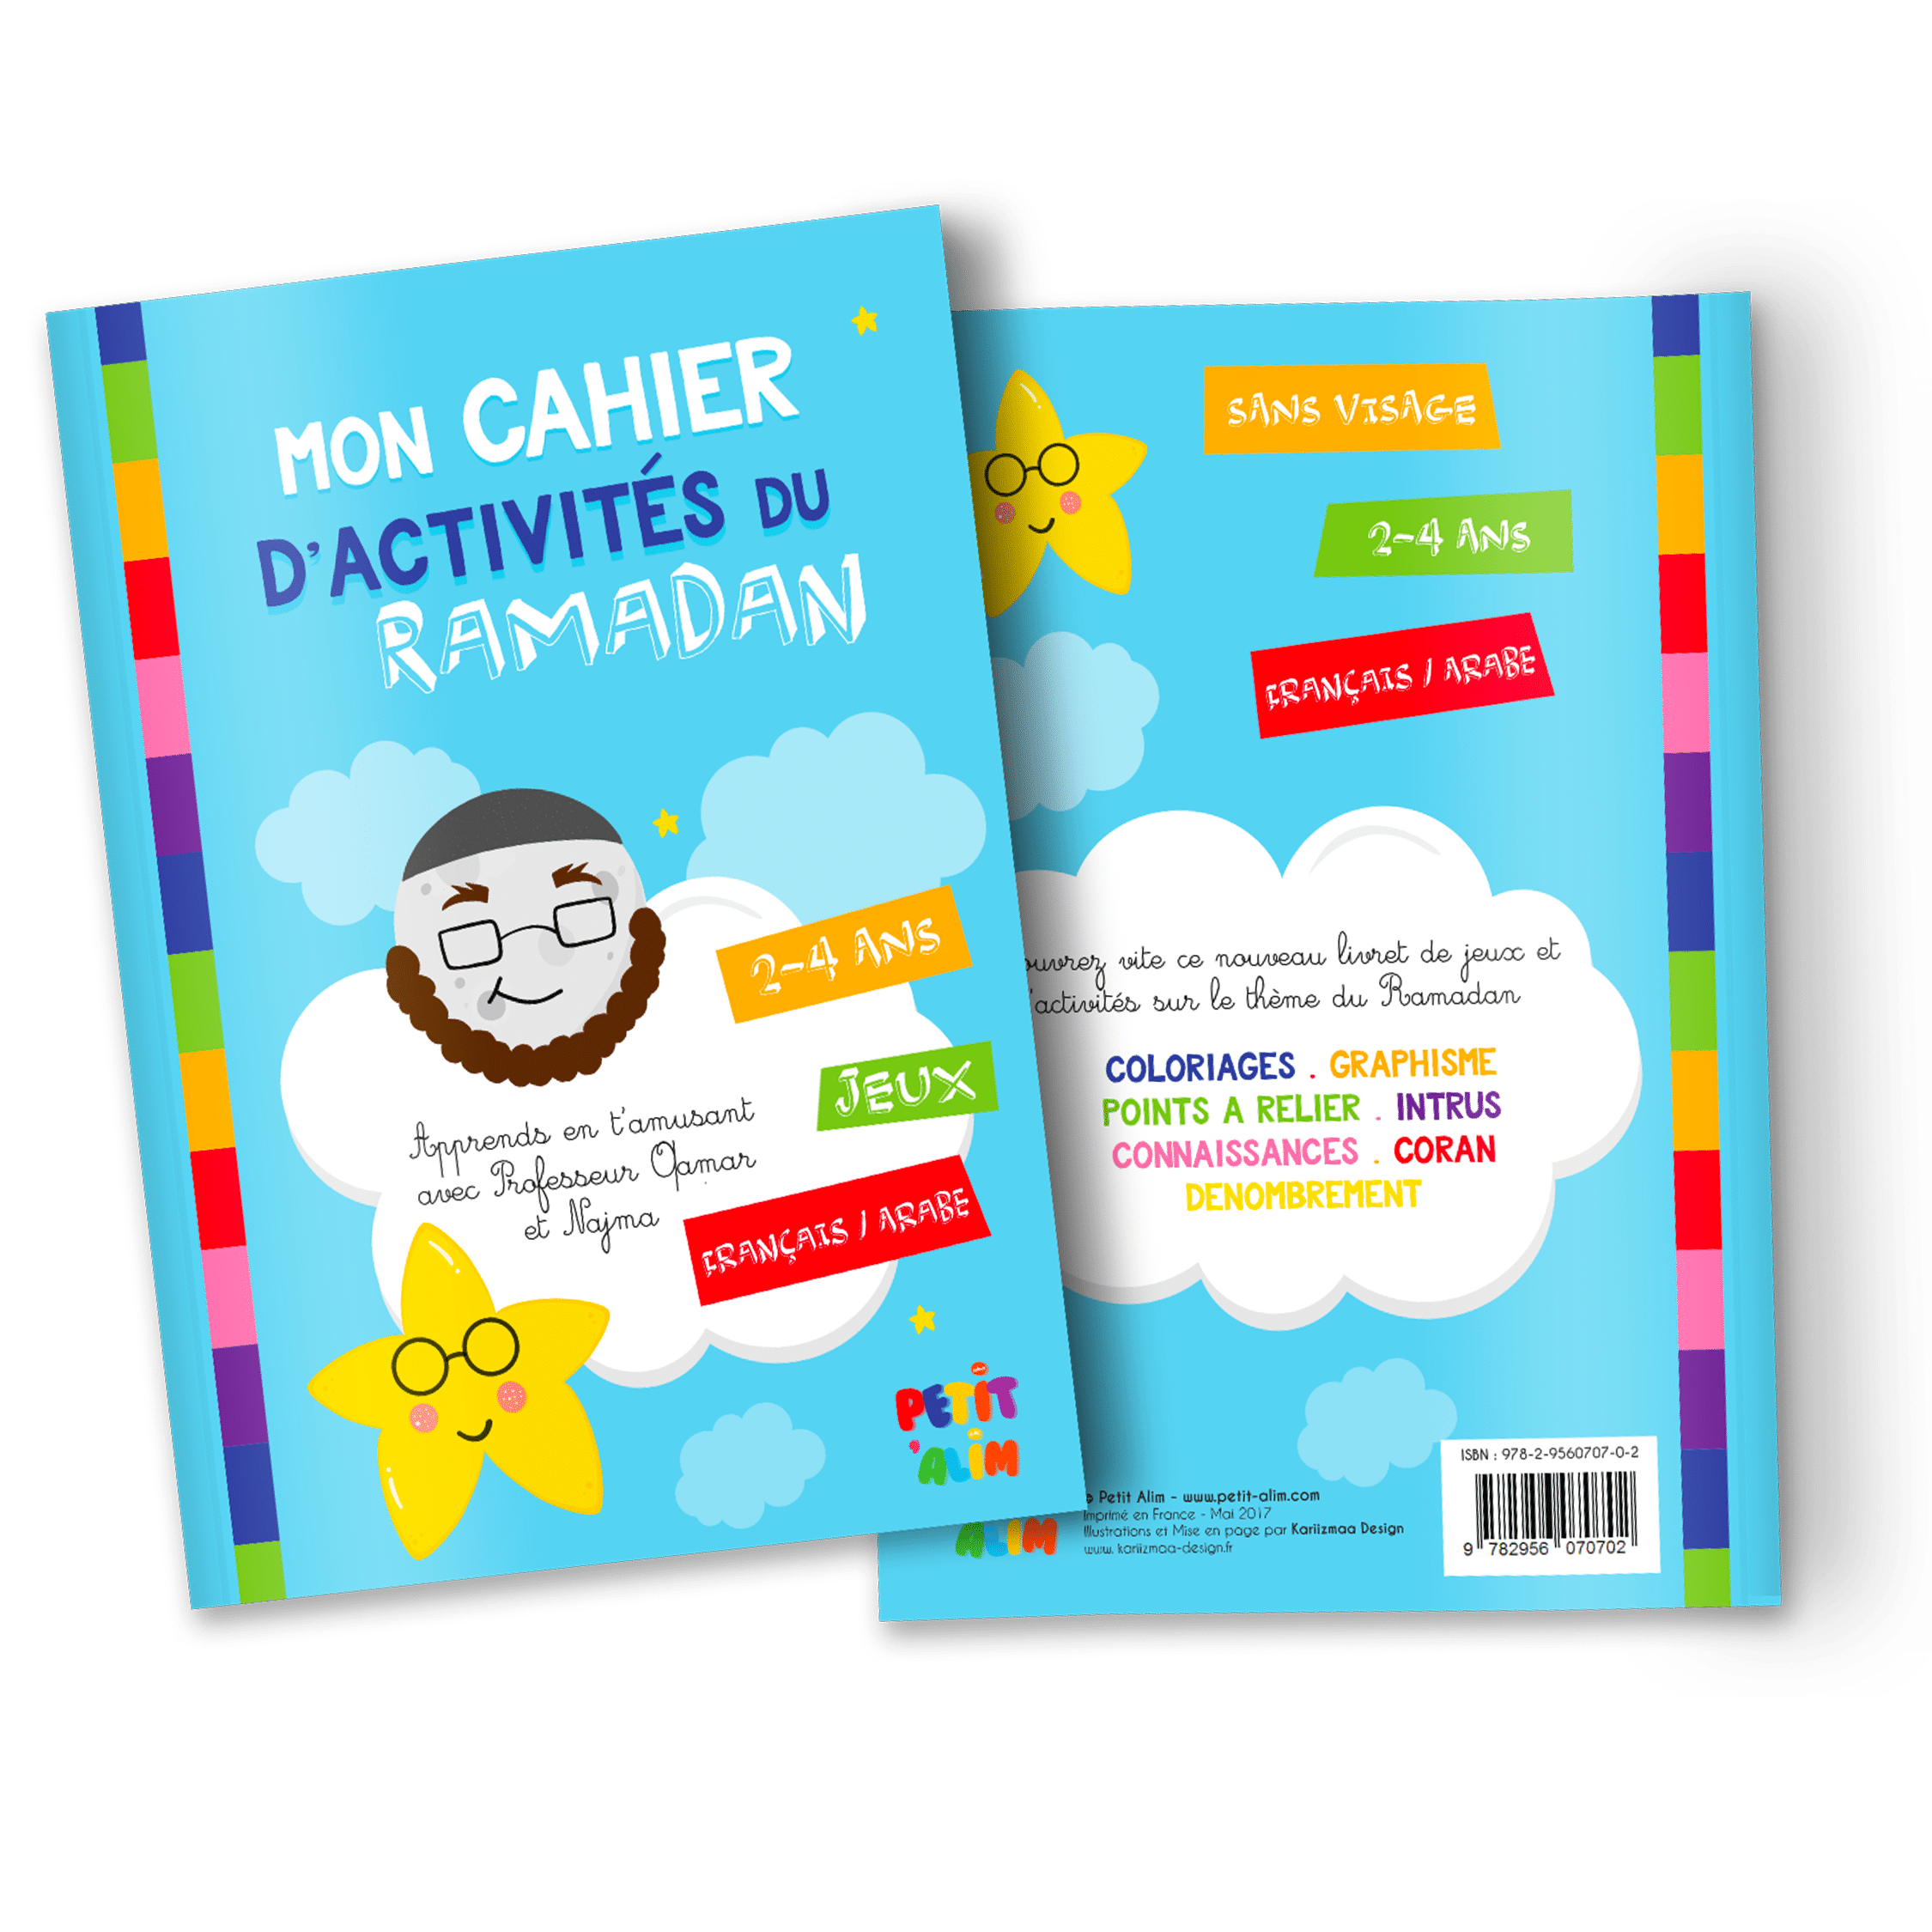 Mon cahier d'activités du Ramadan (2-4 ans) - Petit alim